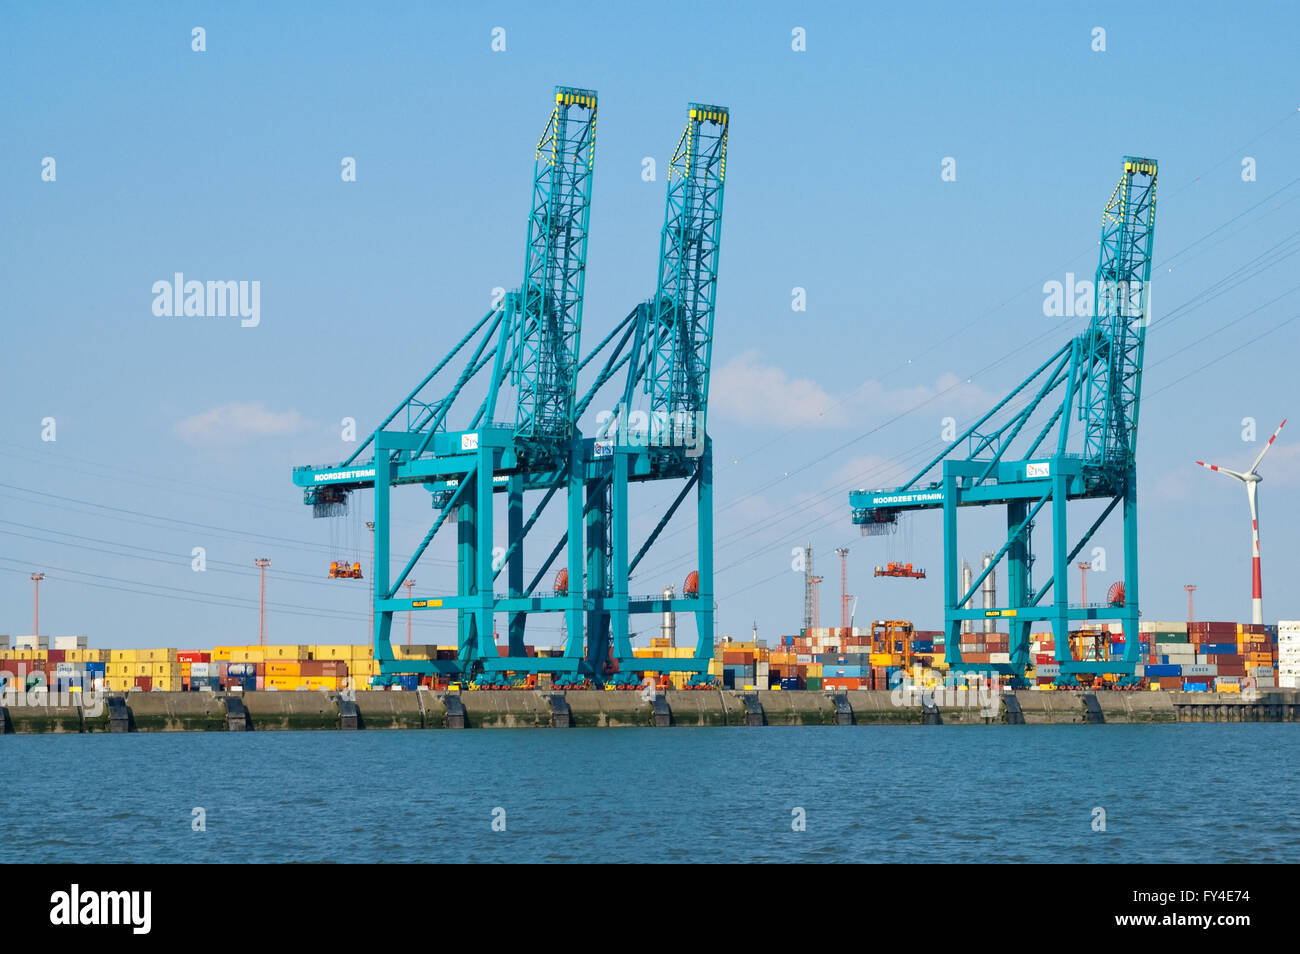 Krane und Container im Container terminal Deurganckdok, Schelde Fluss, Hafen von Antwerpen, Belgien Stockfoto